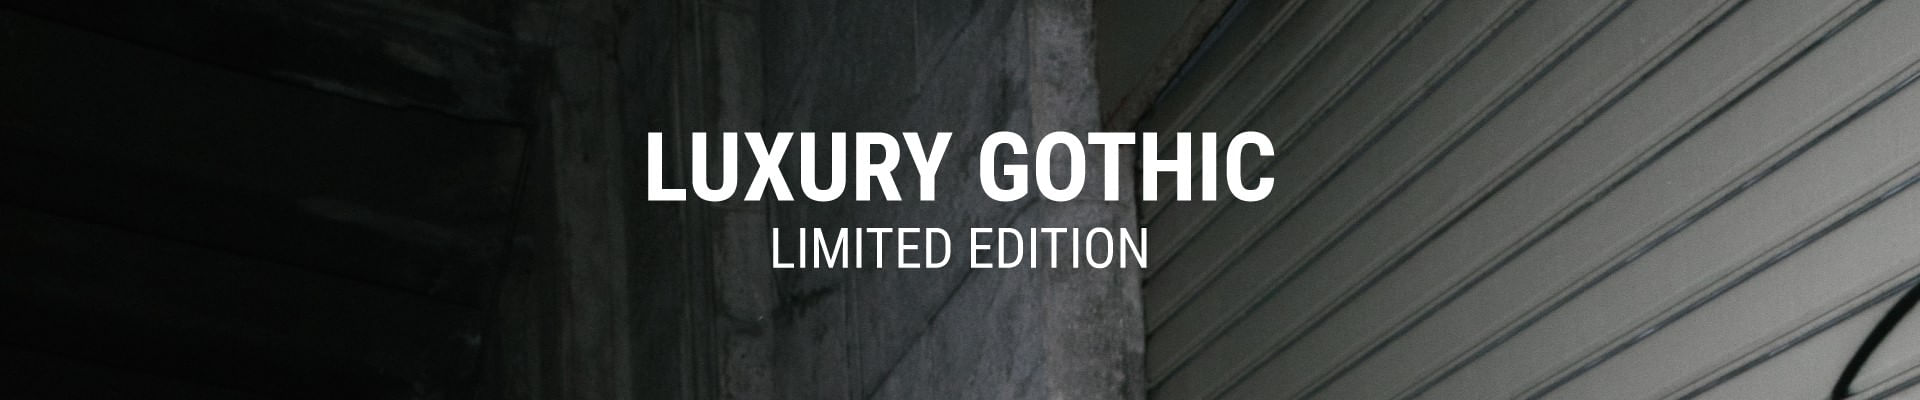 Luxury Gothic